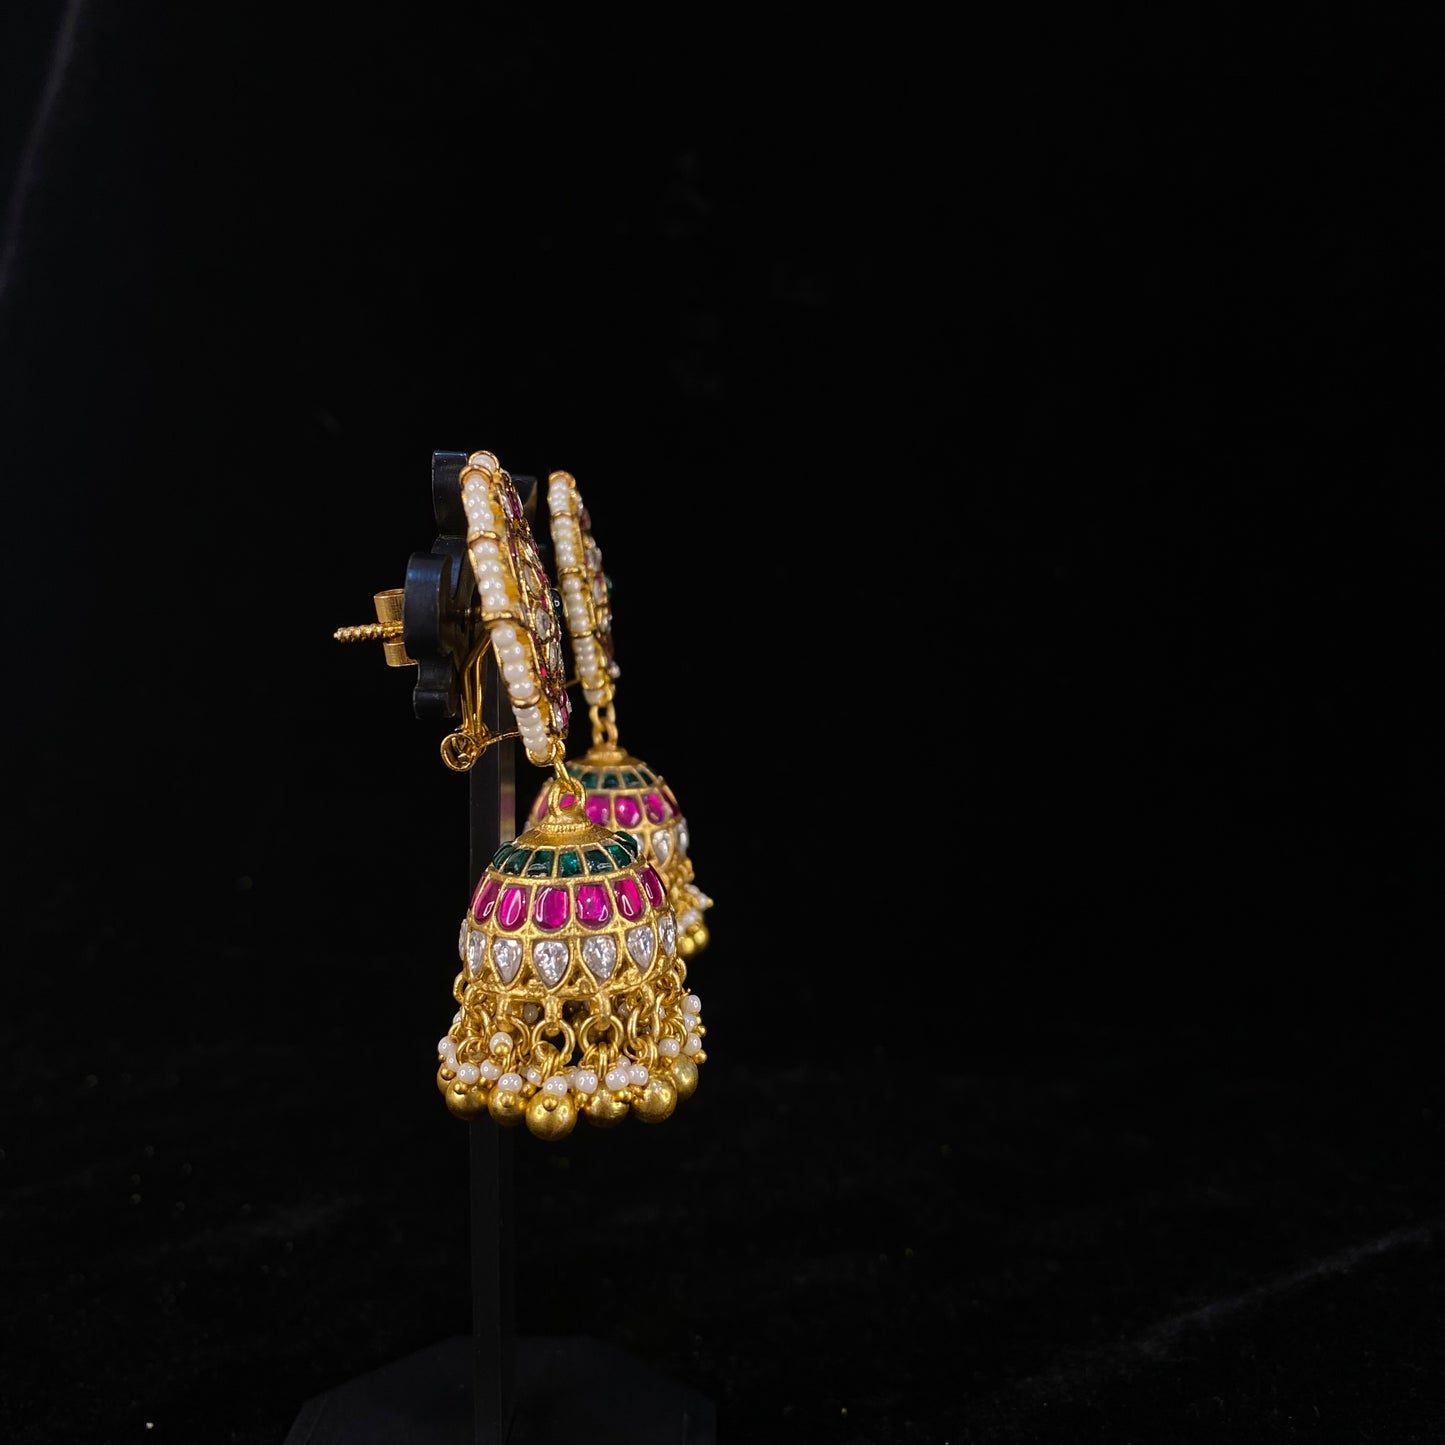 Opulent Starburst Jadau Kundan Jhumkas with Emerald Beads